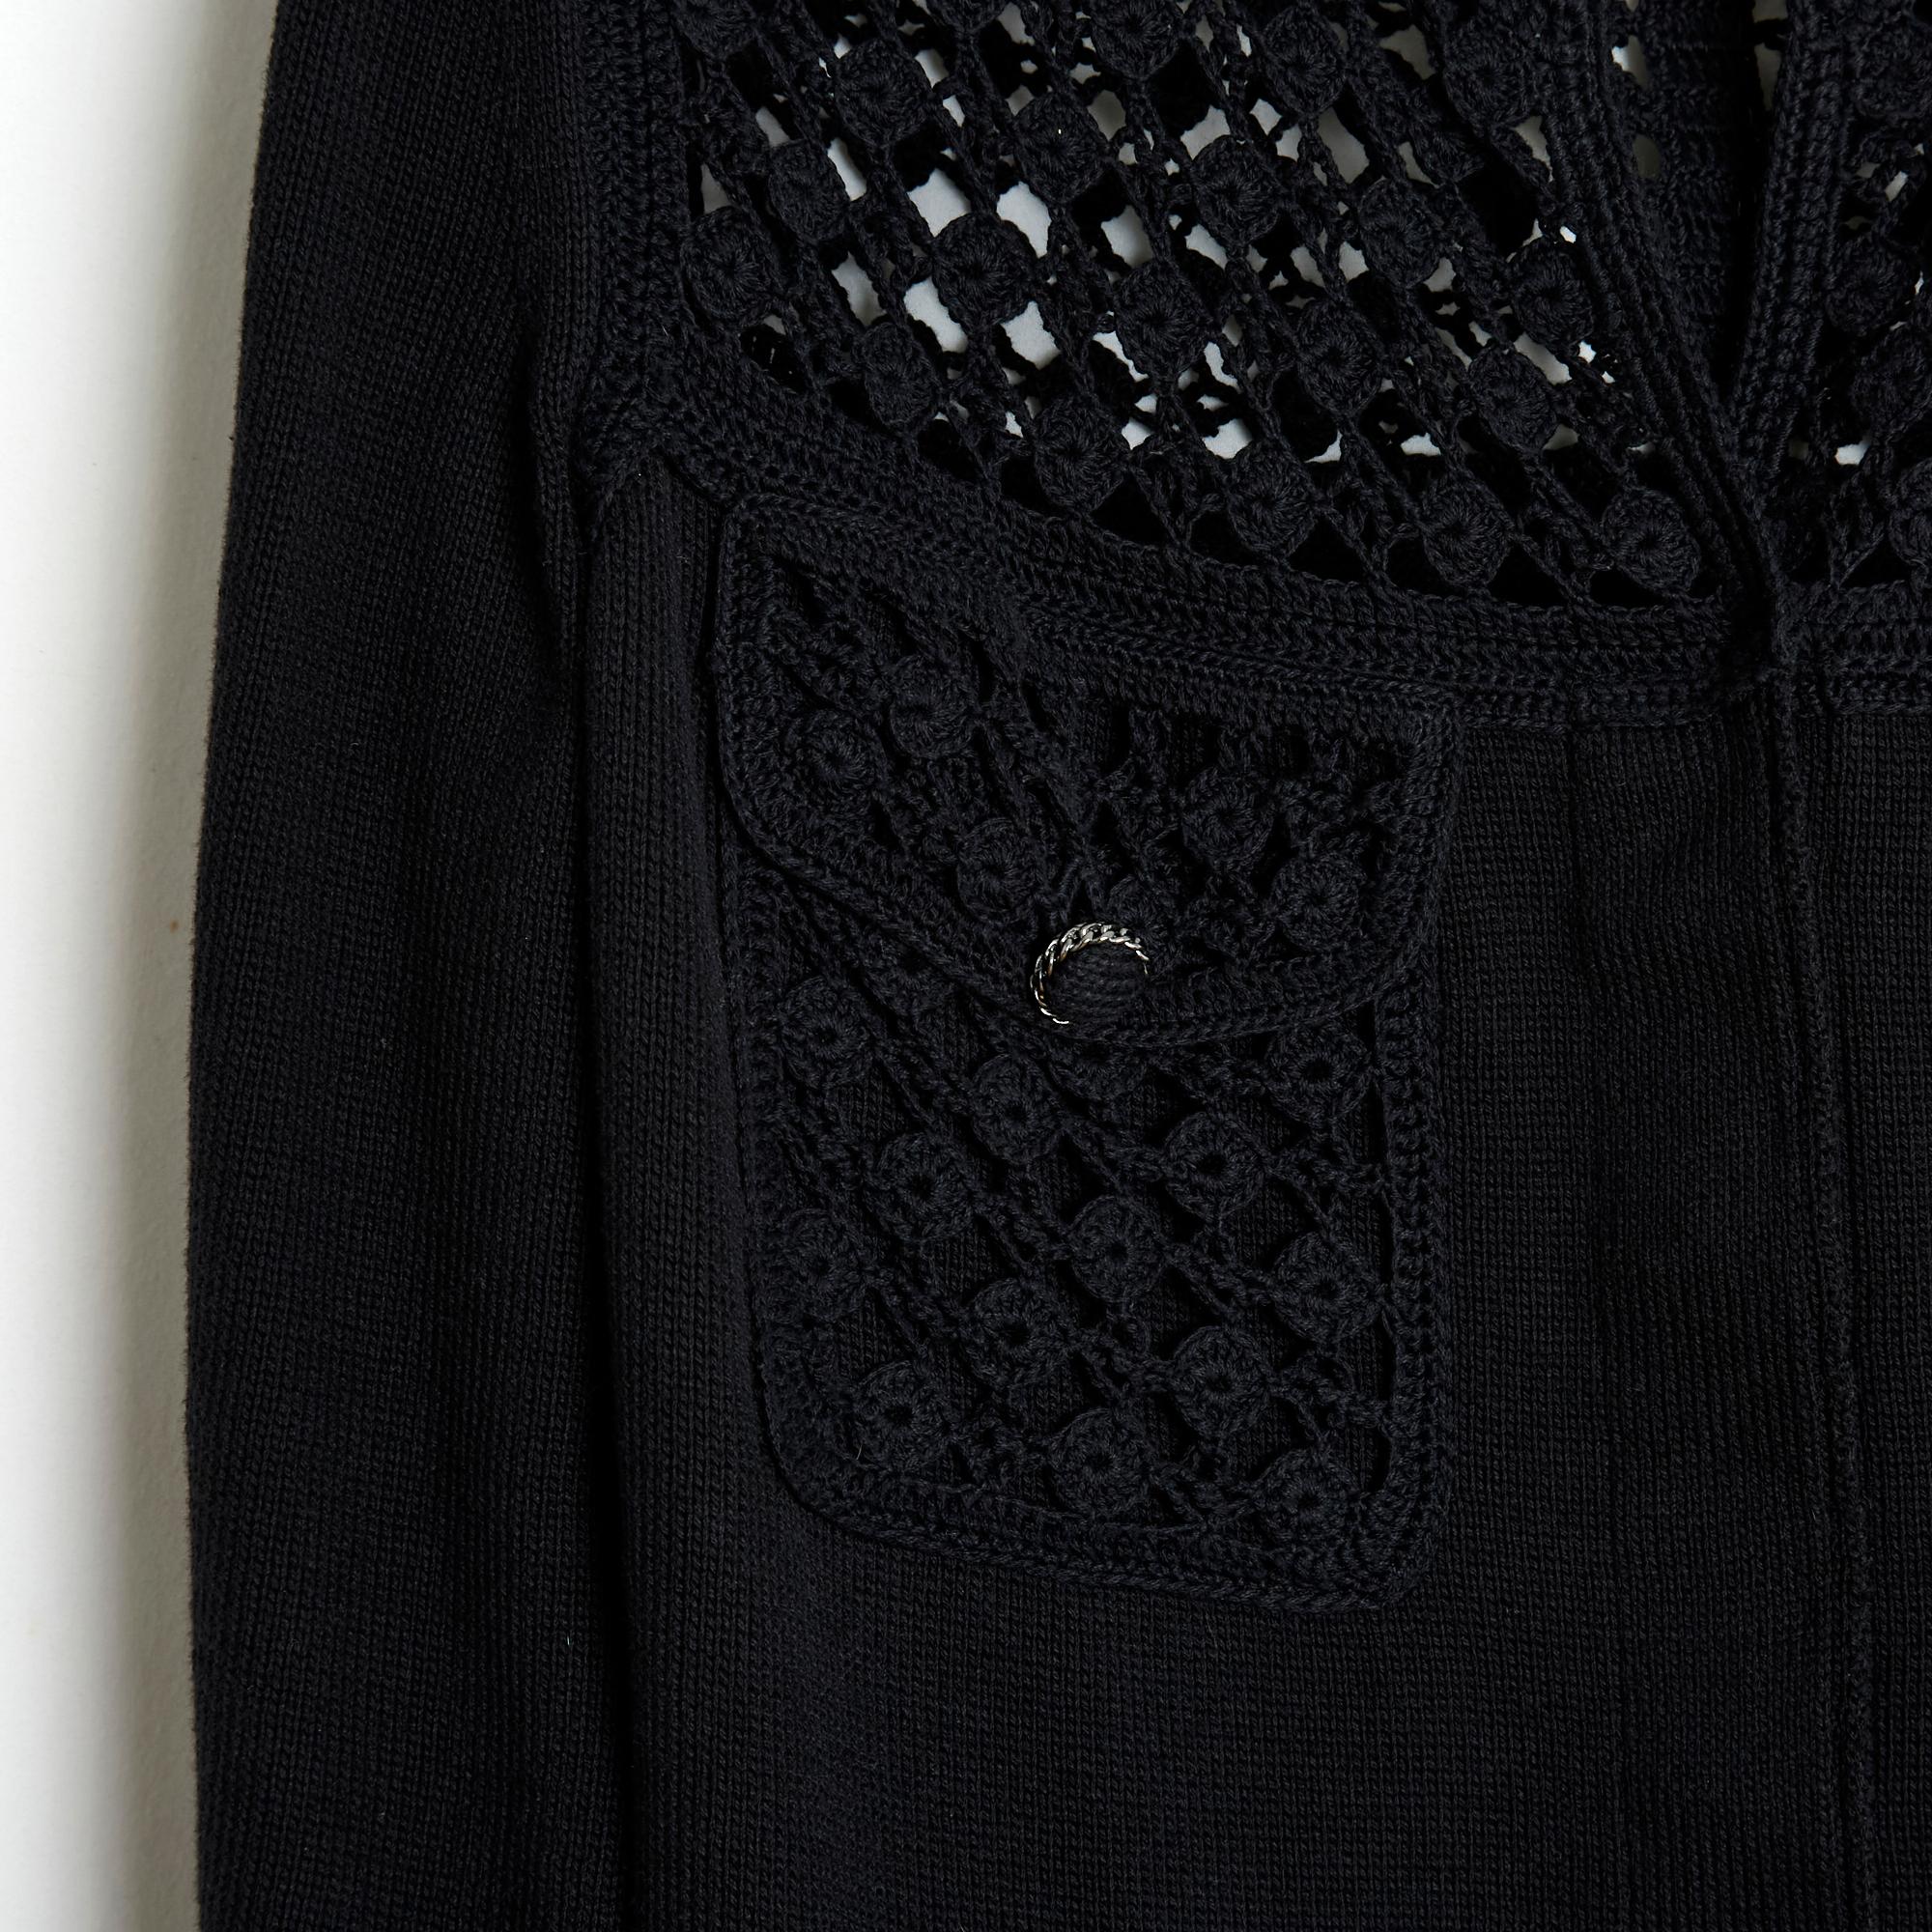 Cardigan Chanel de la collection Printemps Eté 2006, comme une petite veste noire en maille de coton et crochet, col rond fermé par 4 boutons Chanel cachés, manches 2/3, 4 poches à rabat fermées par un bouton, buste supérieur ajouré, non doublé .